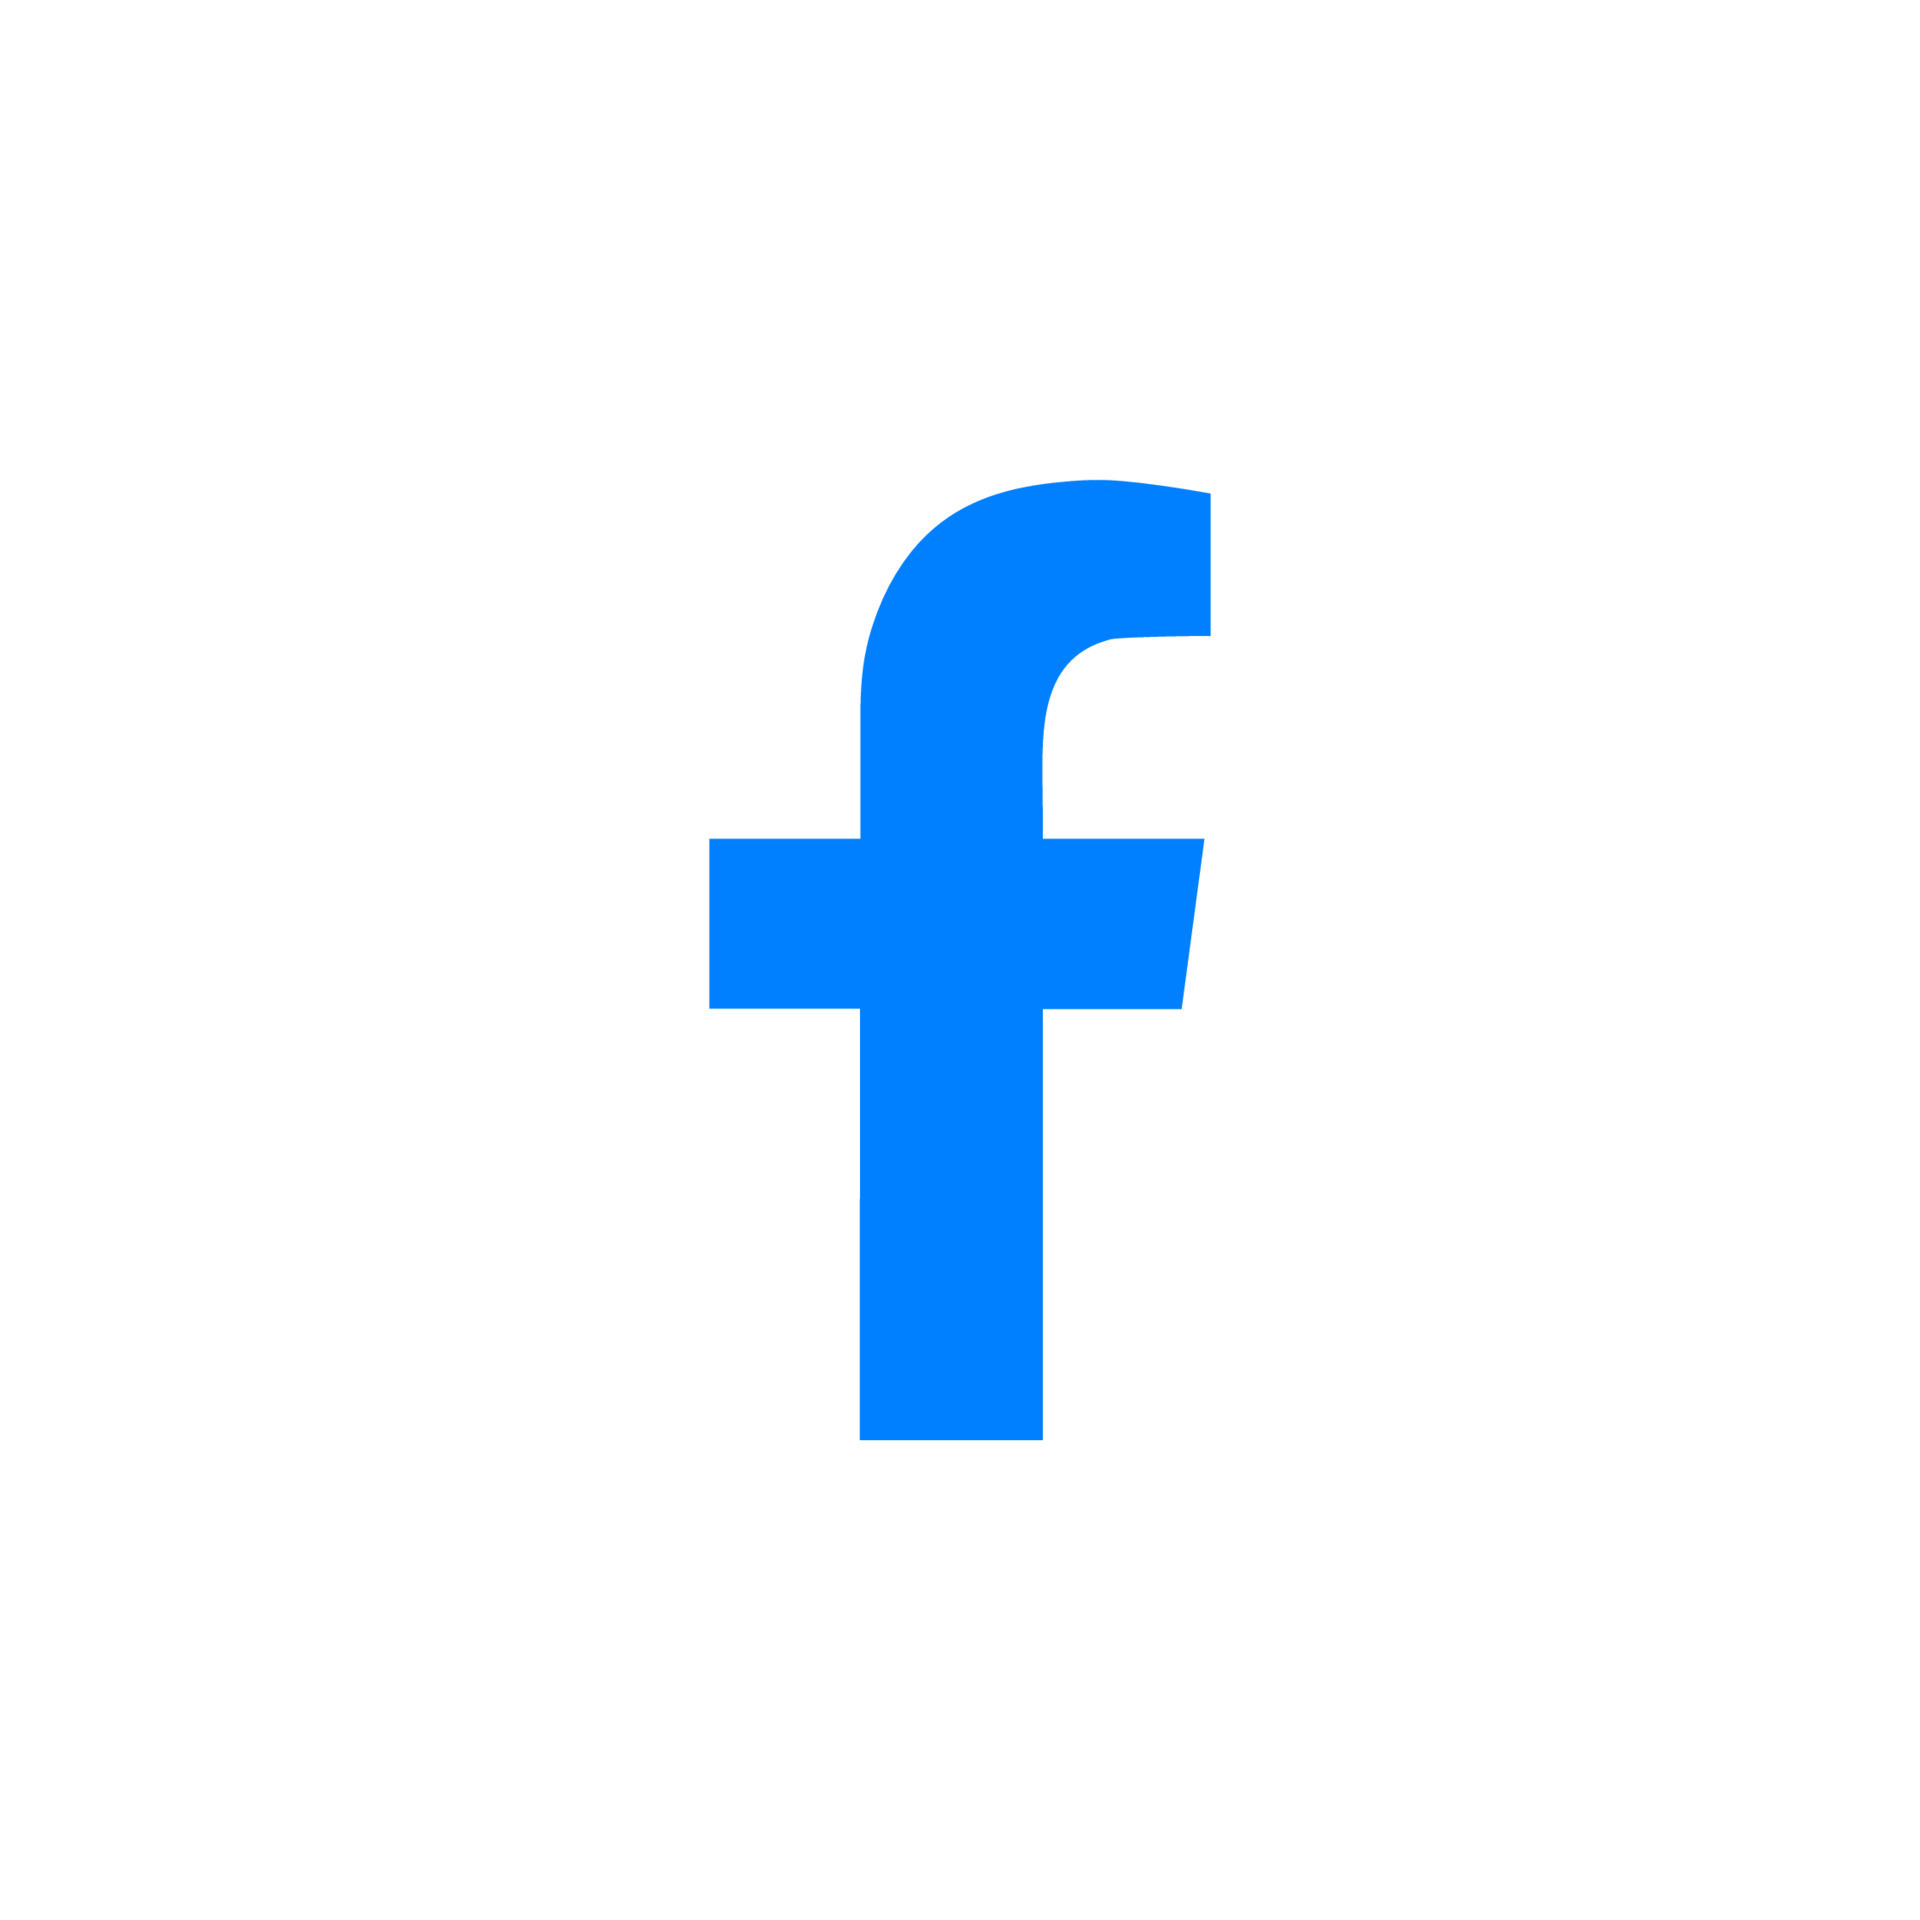 App icon facebook Royalty Free Vector Image - VectorStock